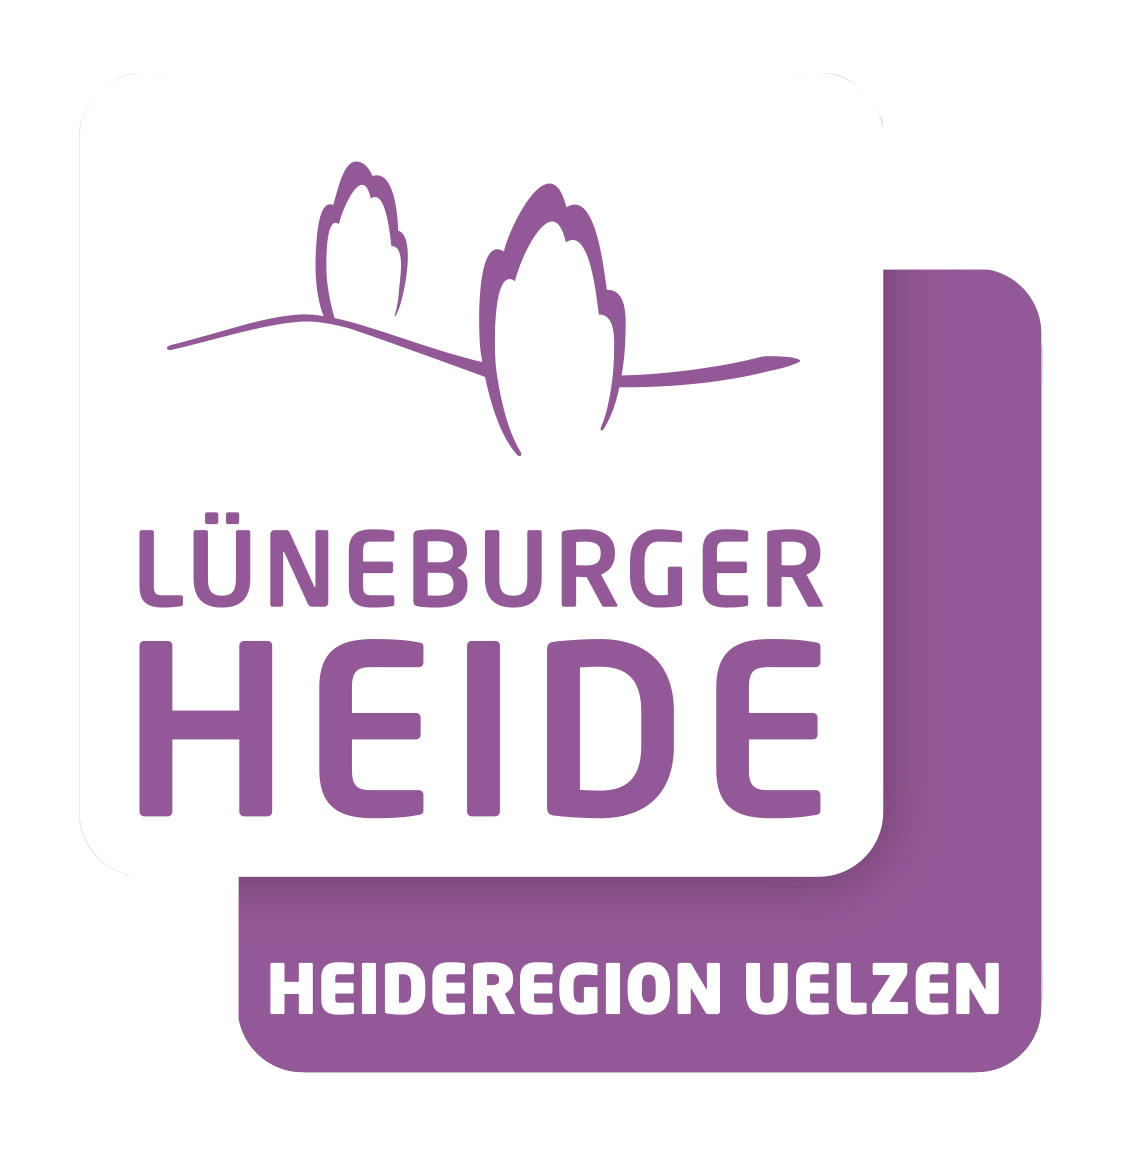 Heideregion Uelzen Logo